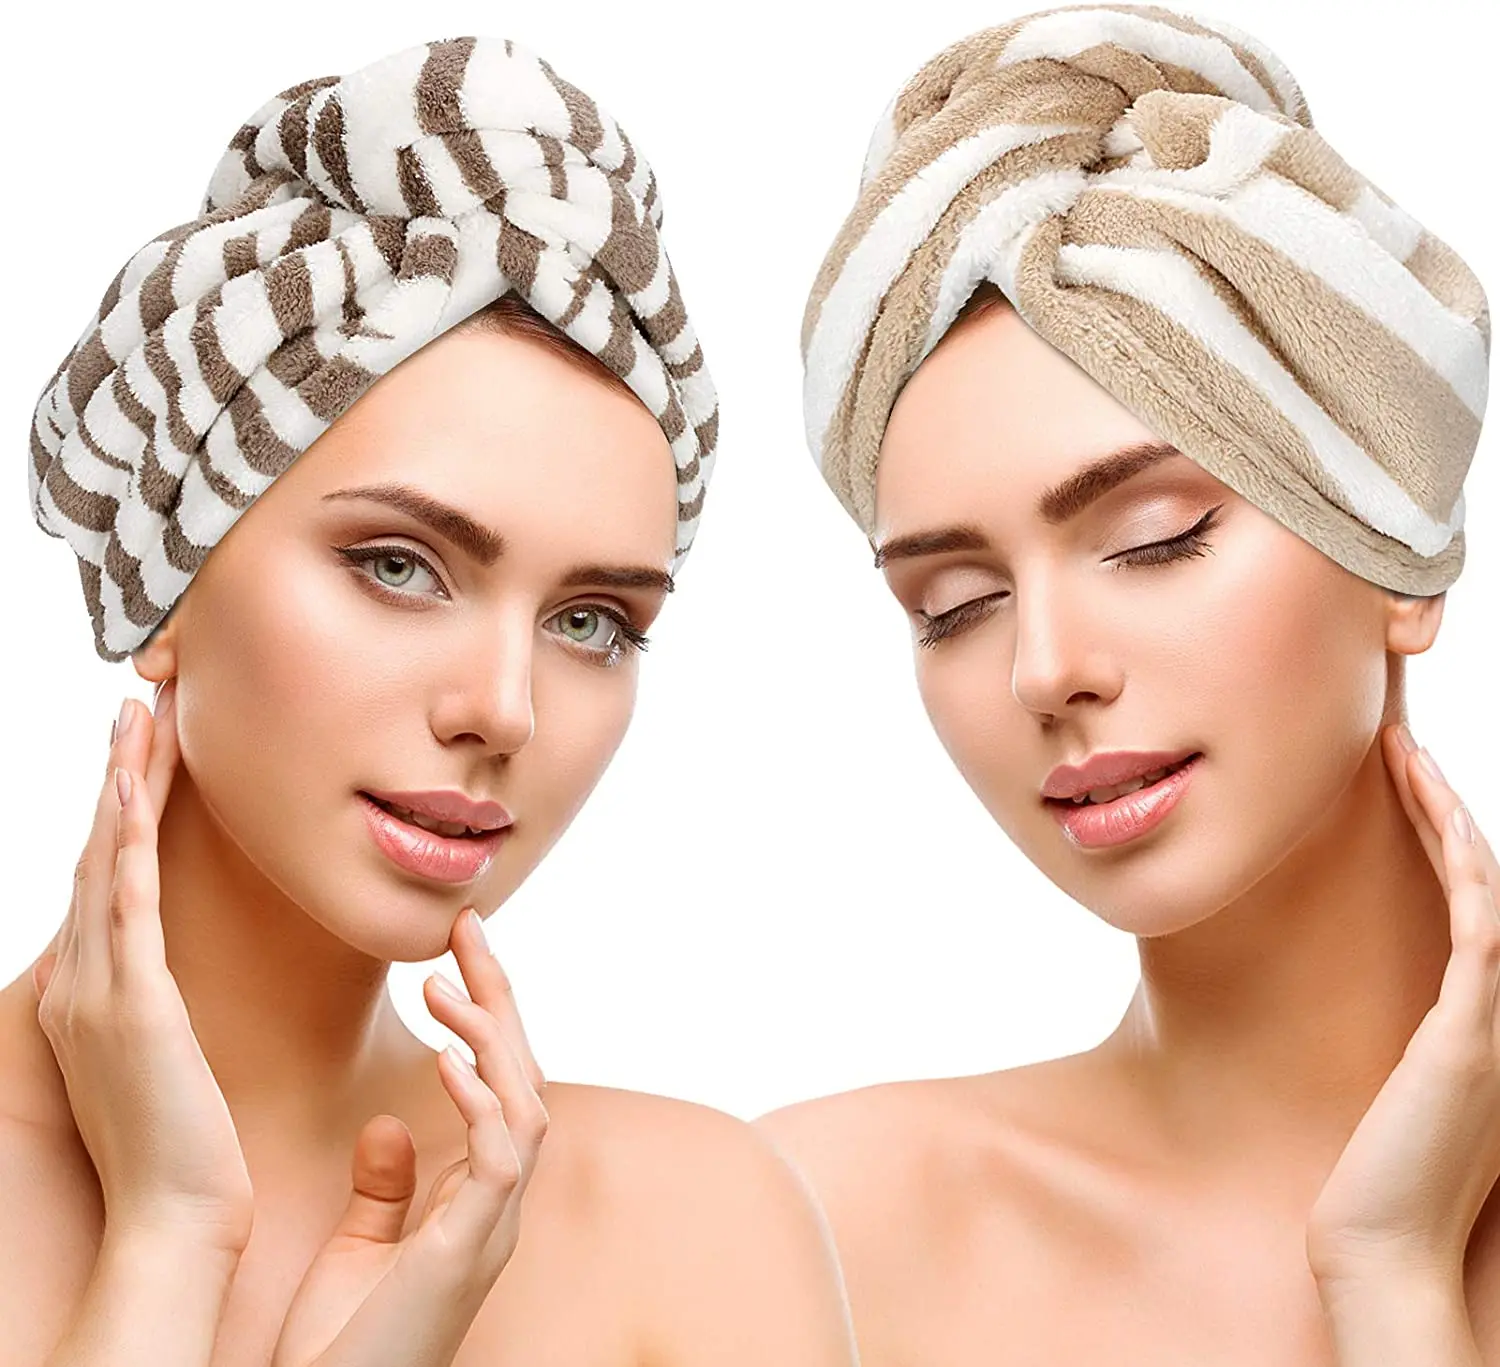 

Полотенце-тюрбан для сушки волос, полотенце с застежкой-петлей, впитывающая мягкая шапочка из микрофибры, 2 упаковки